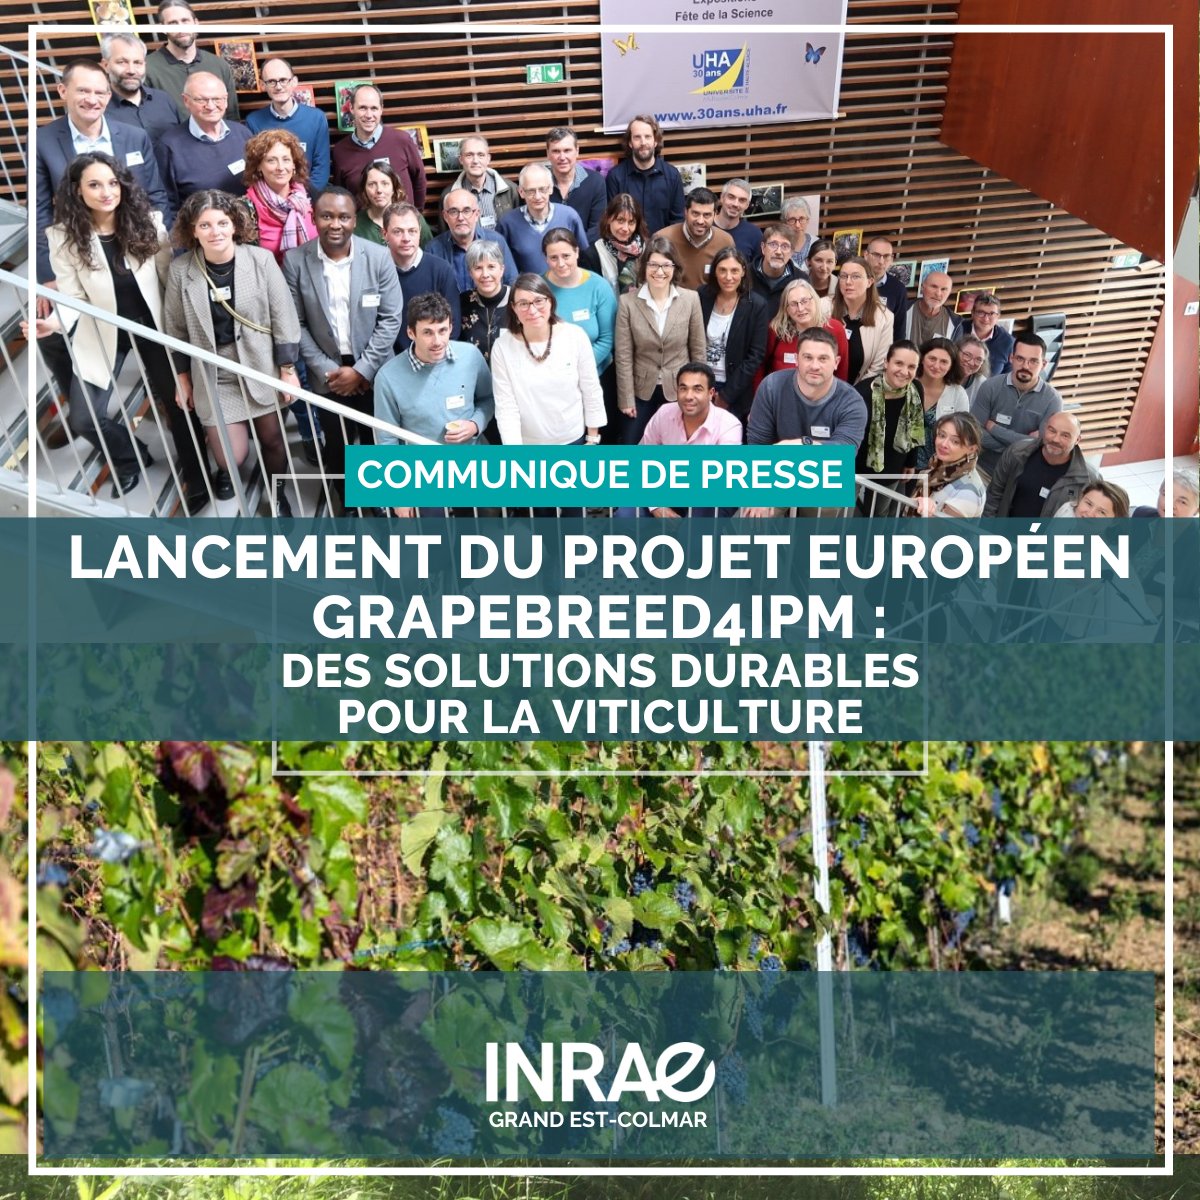 🍇 Lancement du projet européen #GrapeBreed4IPM. Coordonné par @INRAE_France, ce projet rassemble 19 partenaires de 7 pays. Objectif: développer des vignes résistantes aux maladies et minimiser la dépendance aux pesticides chimiques
👉 inrae.fr/actualites/lan…